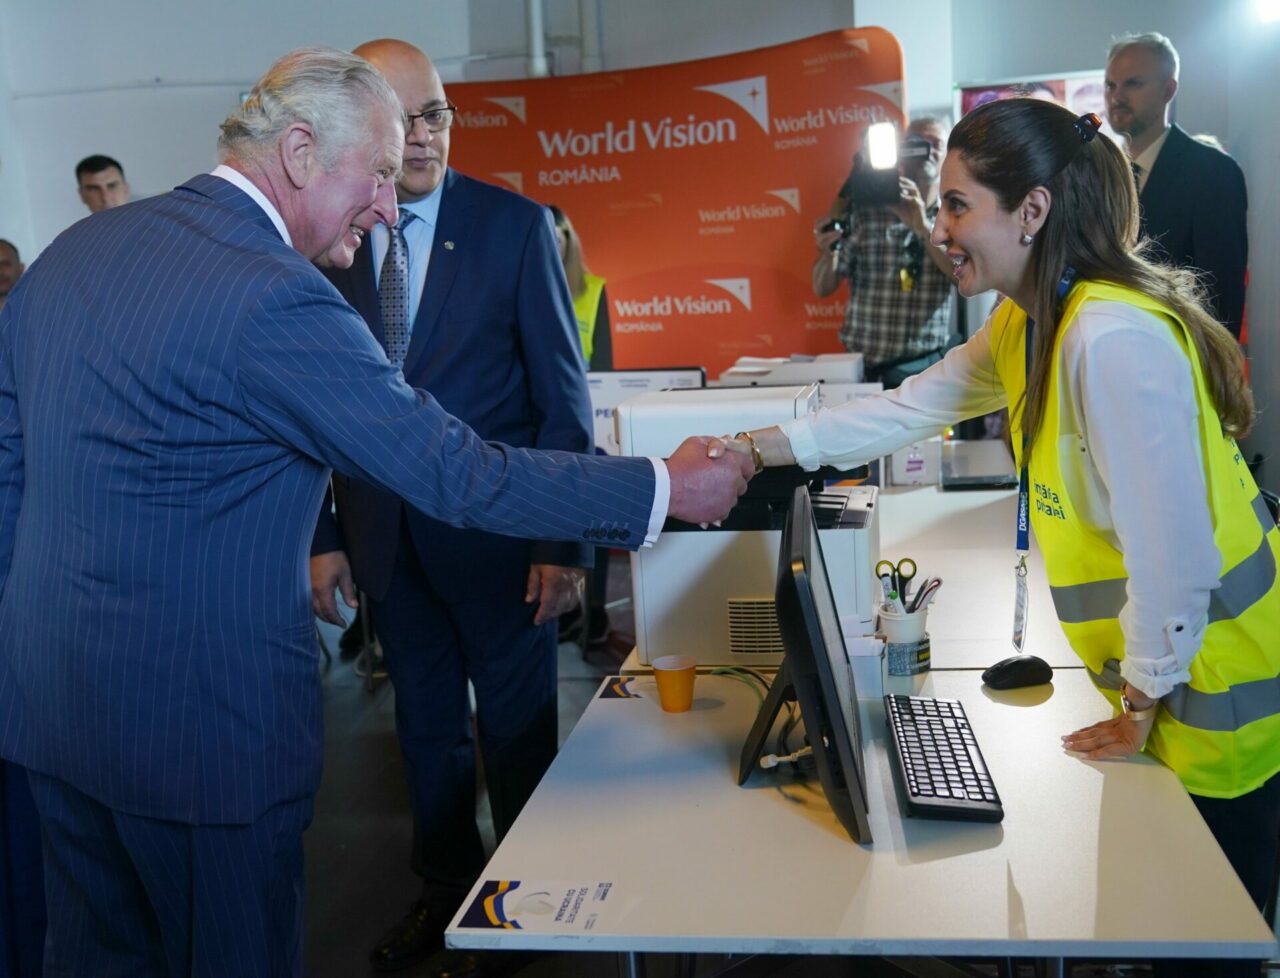 El príncipe Carlos visita centro de acopio en Rumania